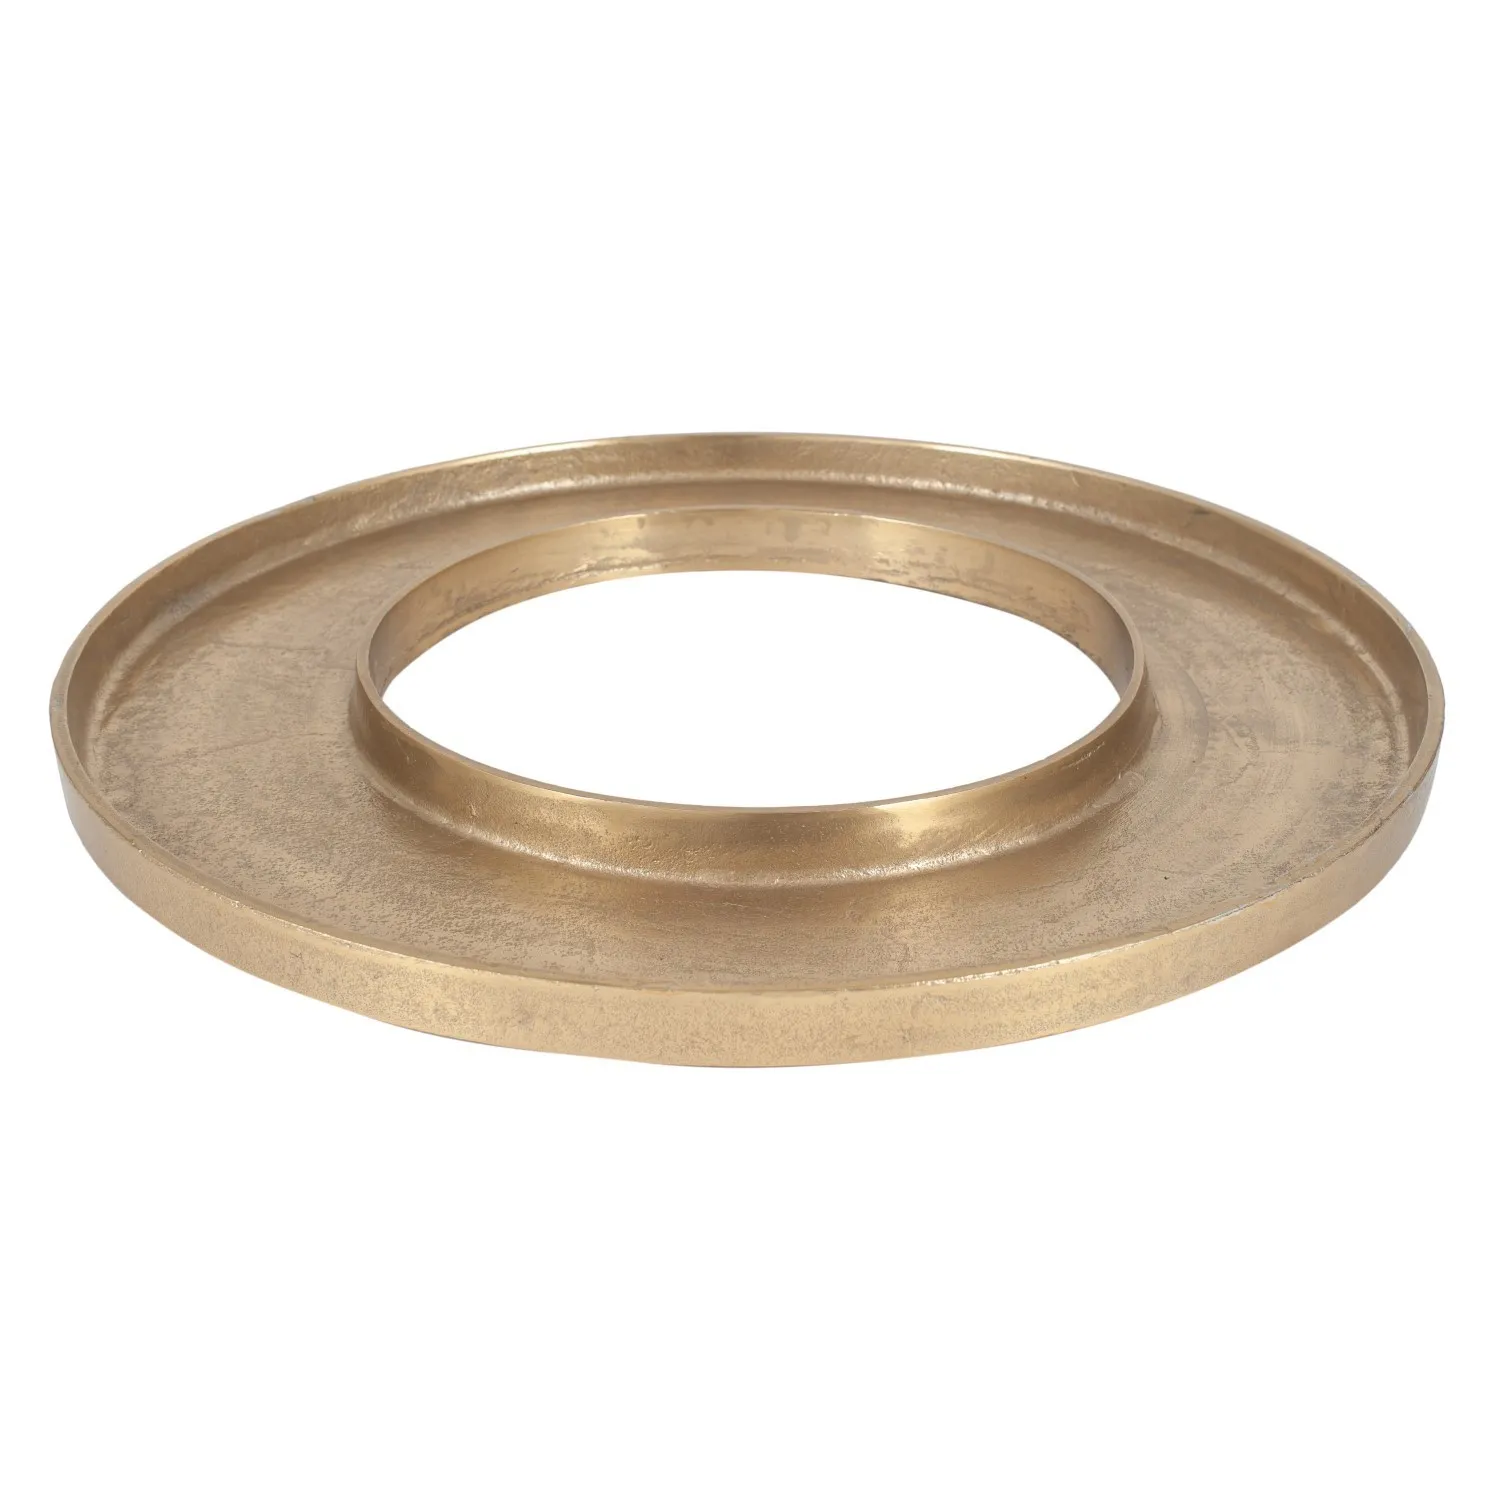 Round Antique Gold Metal Ring Display Platter